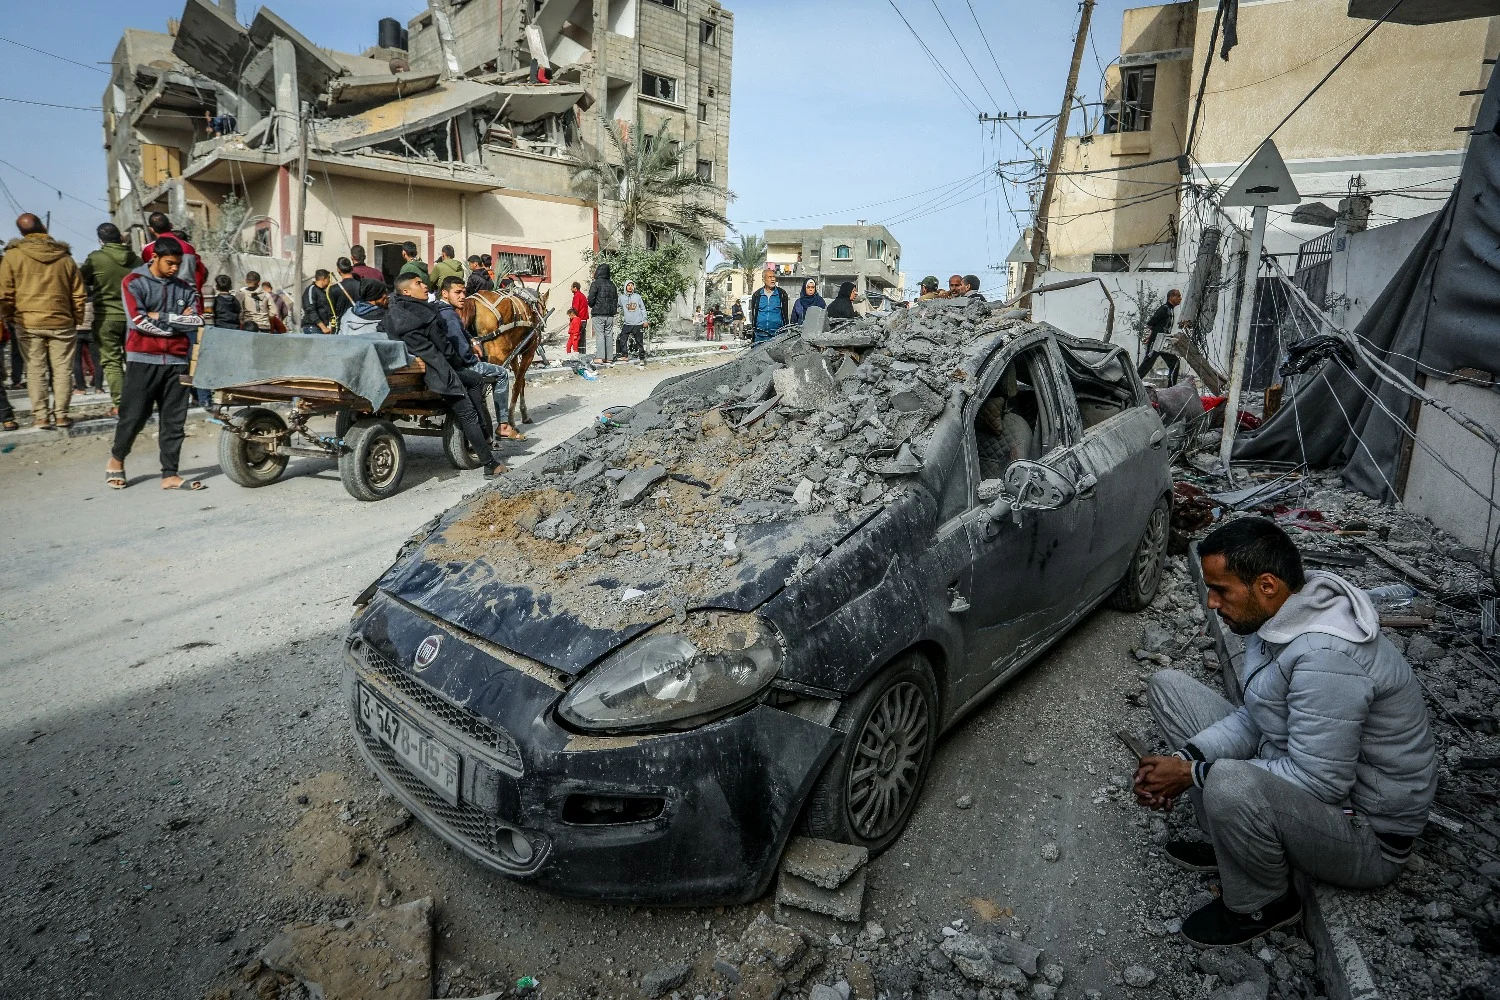 Galant discutiu a operação em Rafah, nos Estados Unidos